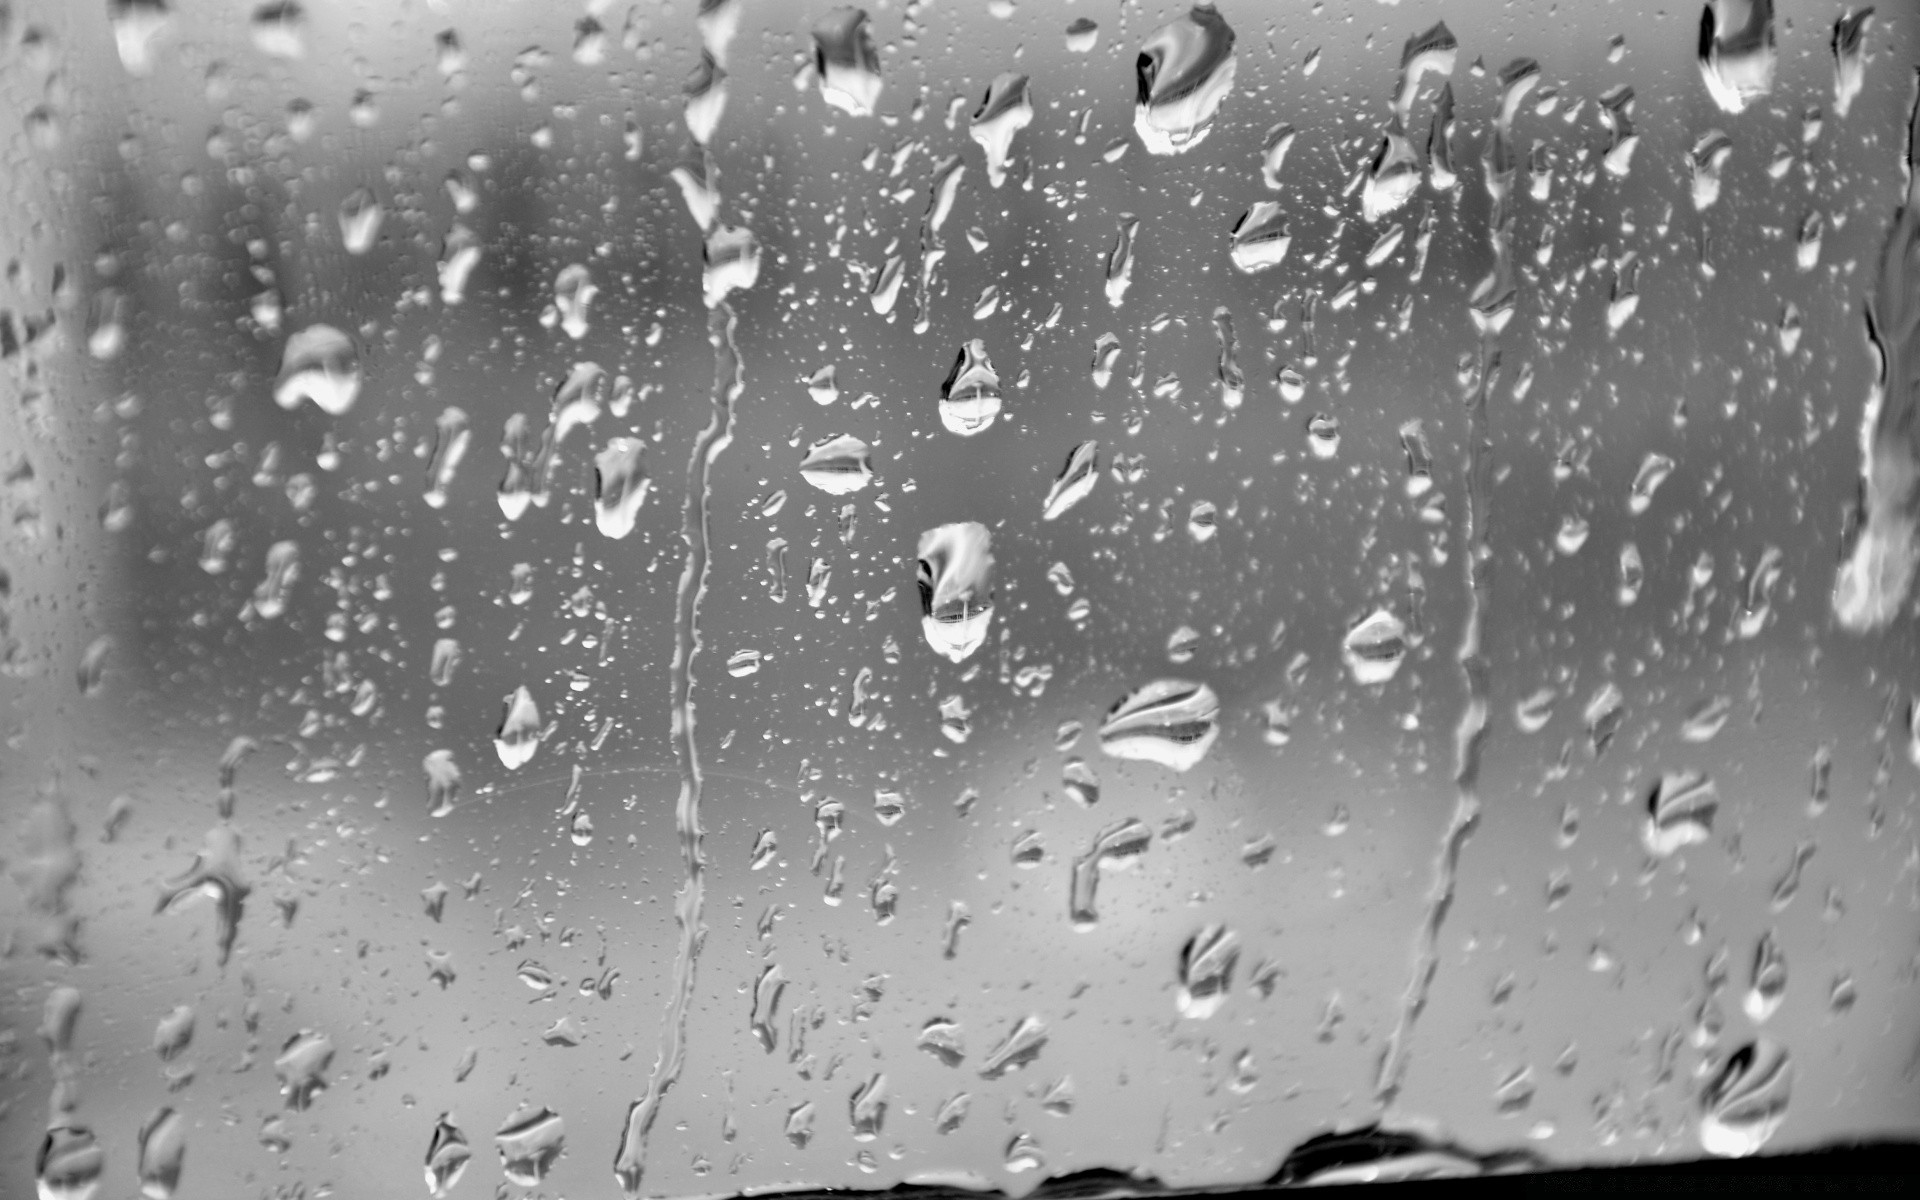 черно-белое дождь мокрый падение росы капли воды пузырь чистые всплеск капли водослива мыть жидкость понятно чистота пульсация дождей холодная